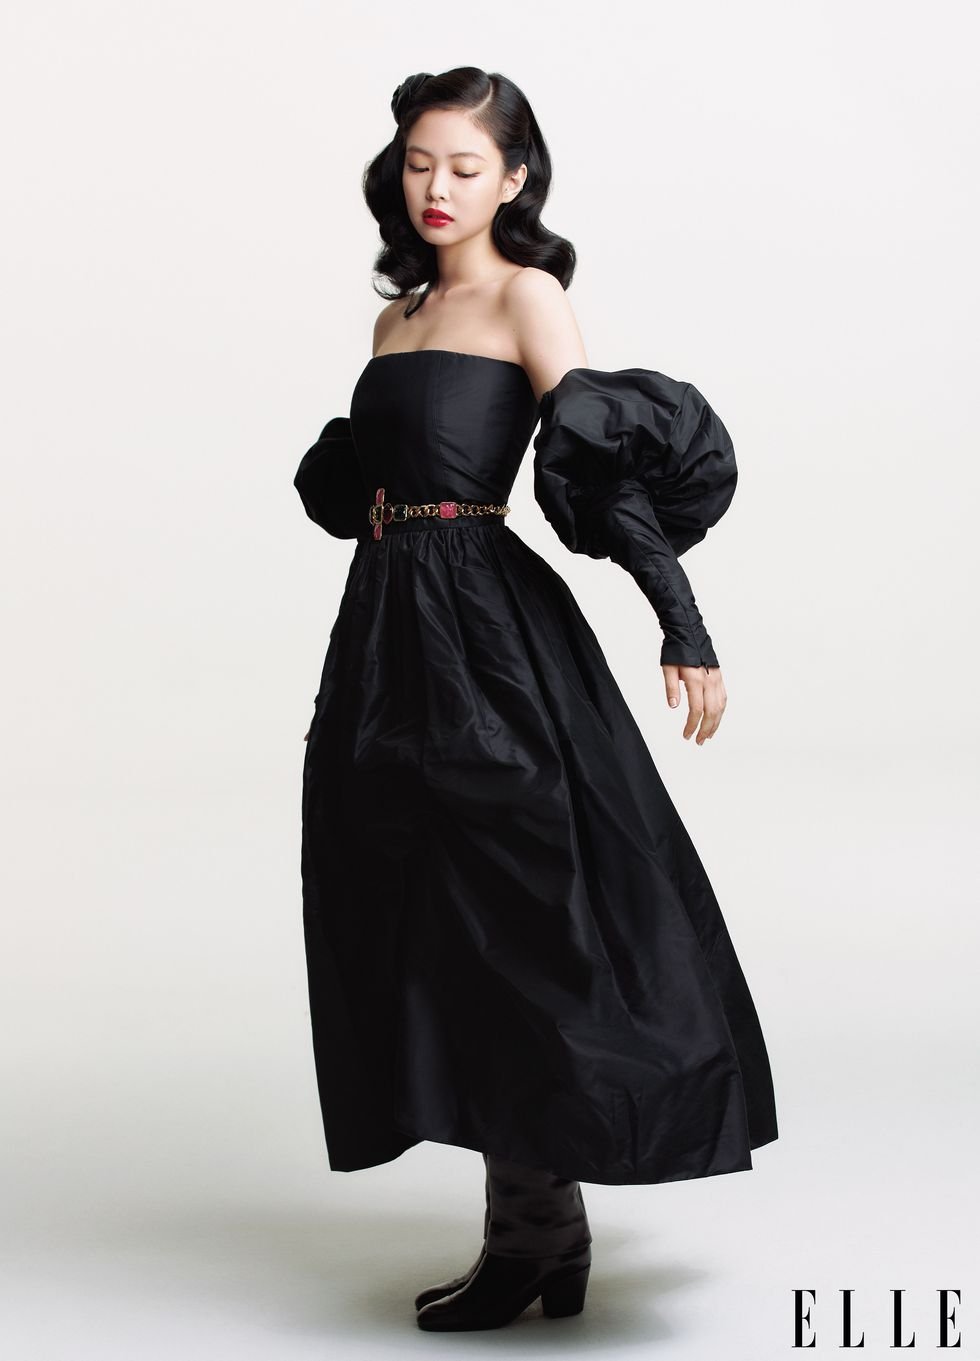 Blackpink Jennie for Elle US October 2020 Issue